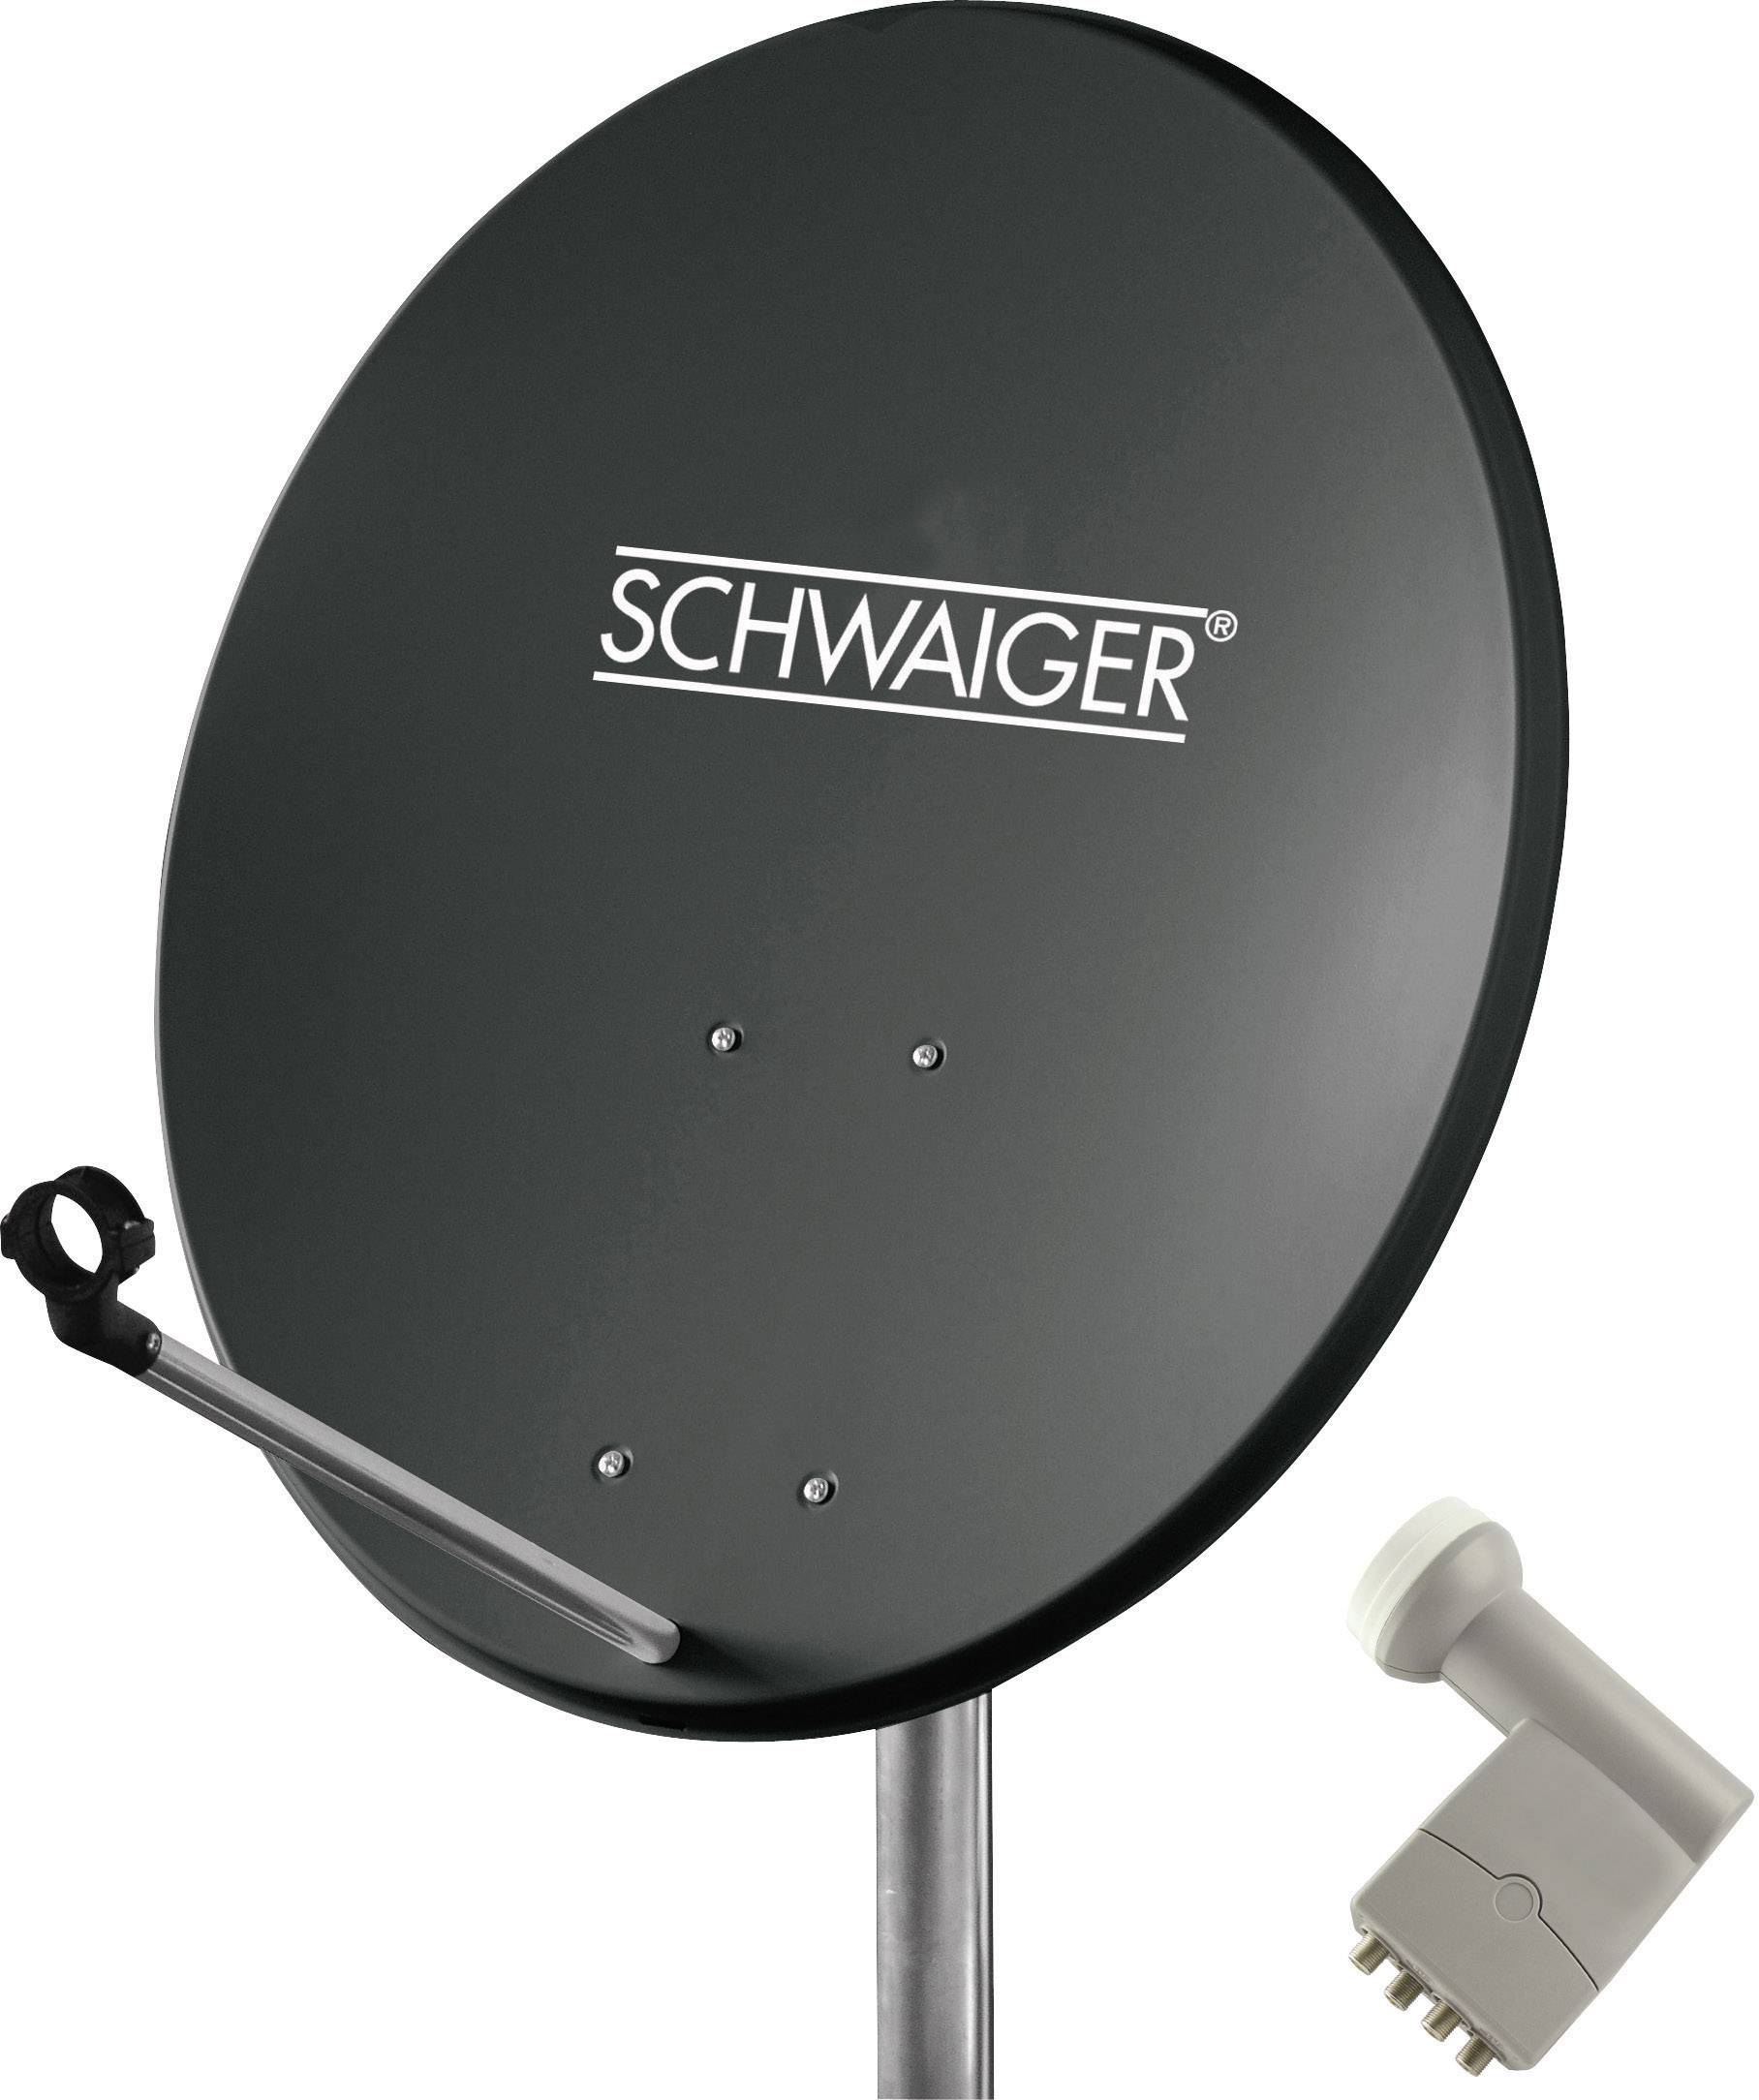 SCHWAIGER SPI5501SET4 SAT-Anlage ohne Receiver Teilnehmer-Anzahl 4 60 cm